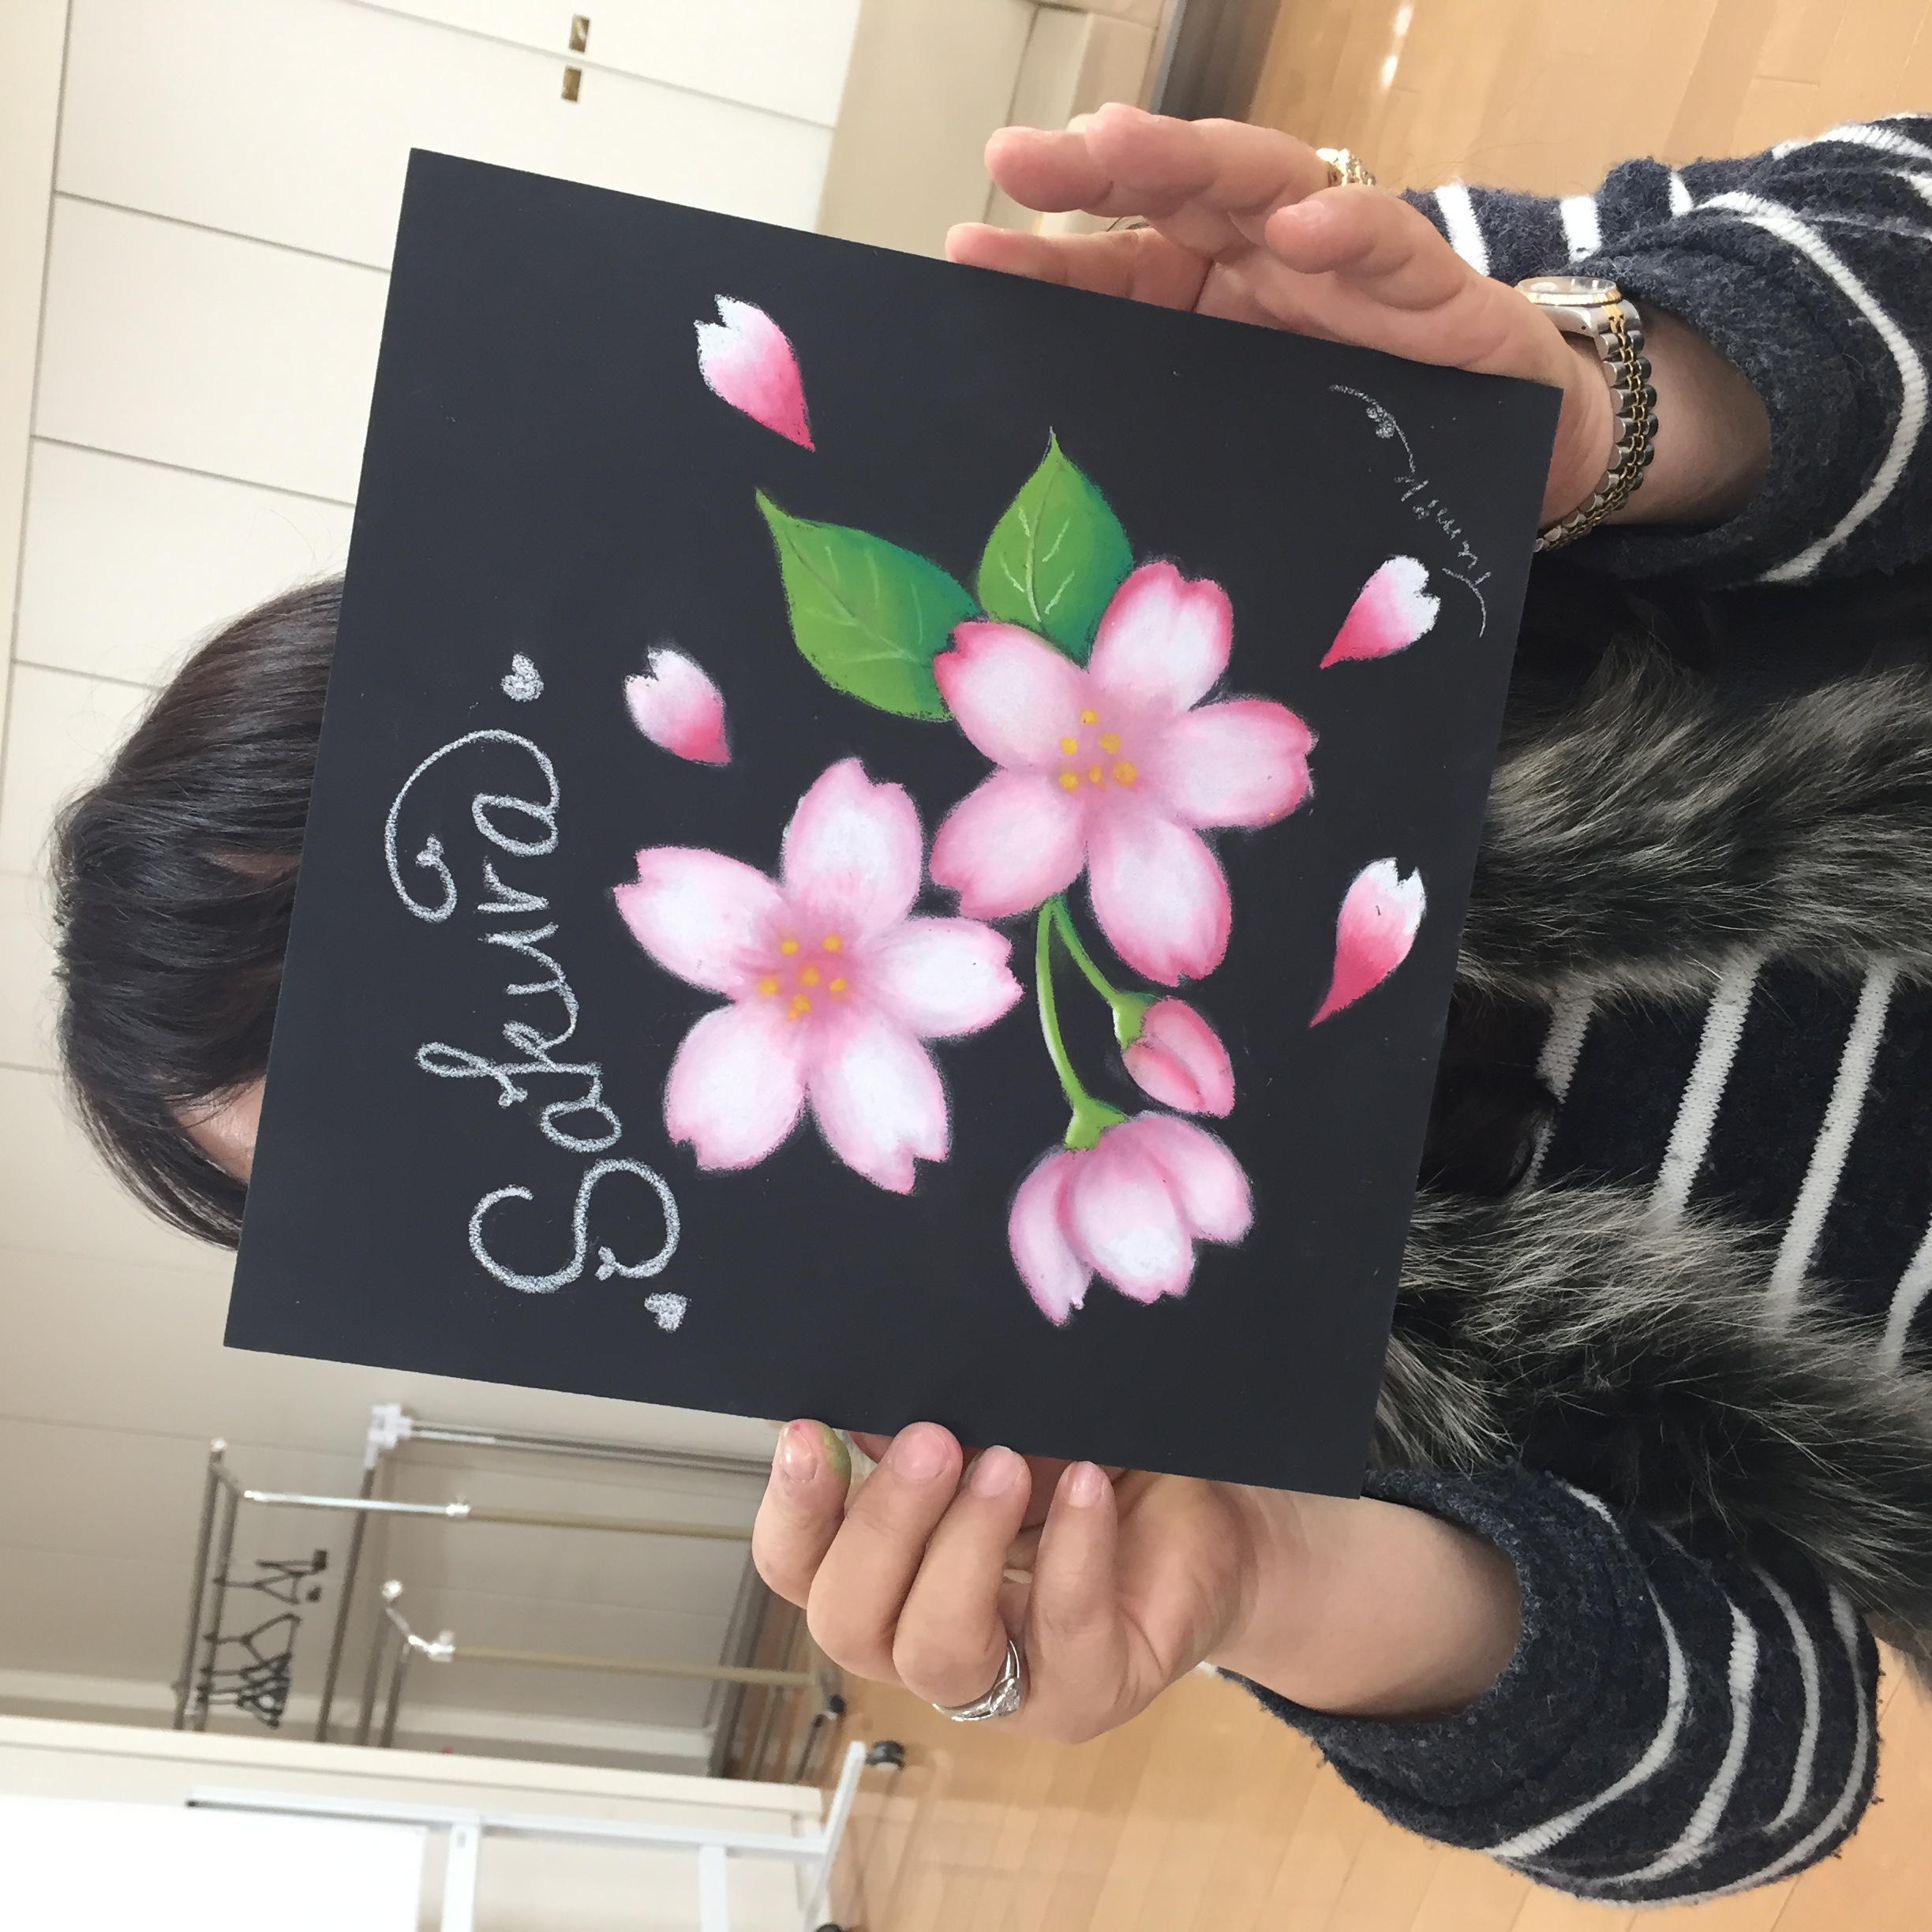 チョークアート川口元郷でレッスン です 春いっぱいに桜 チューリップを描きました 代々木上原 池袋 川口元郷で教室開催しています キャッチパステル チョークアート